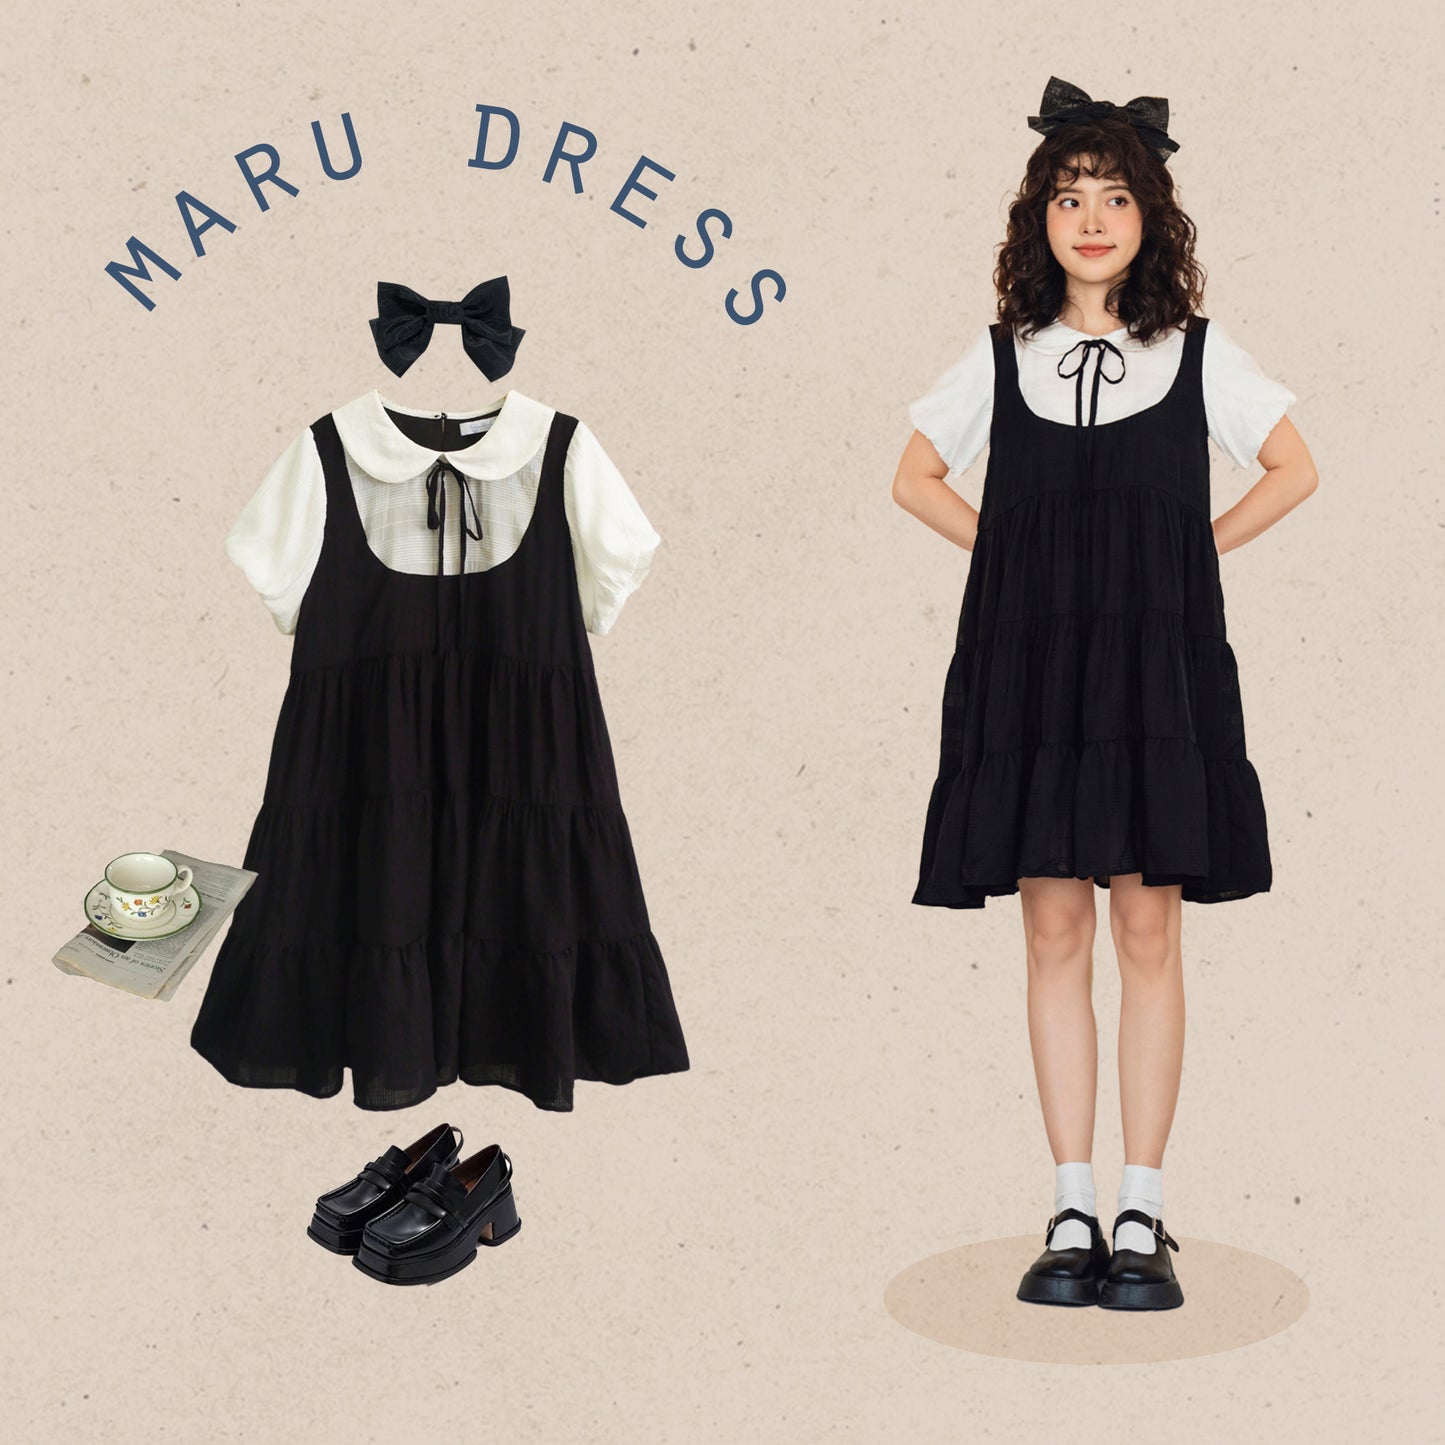 Maru Dress